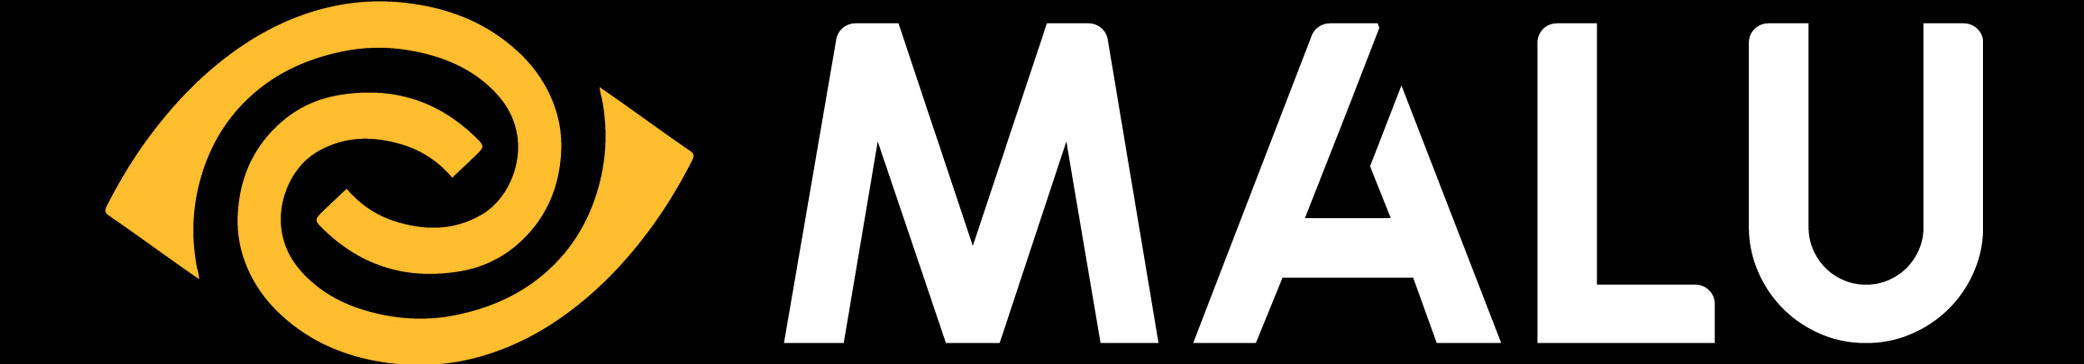 Baner profilu użytkownika Malu Design - Brand Identity Agency